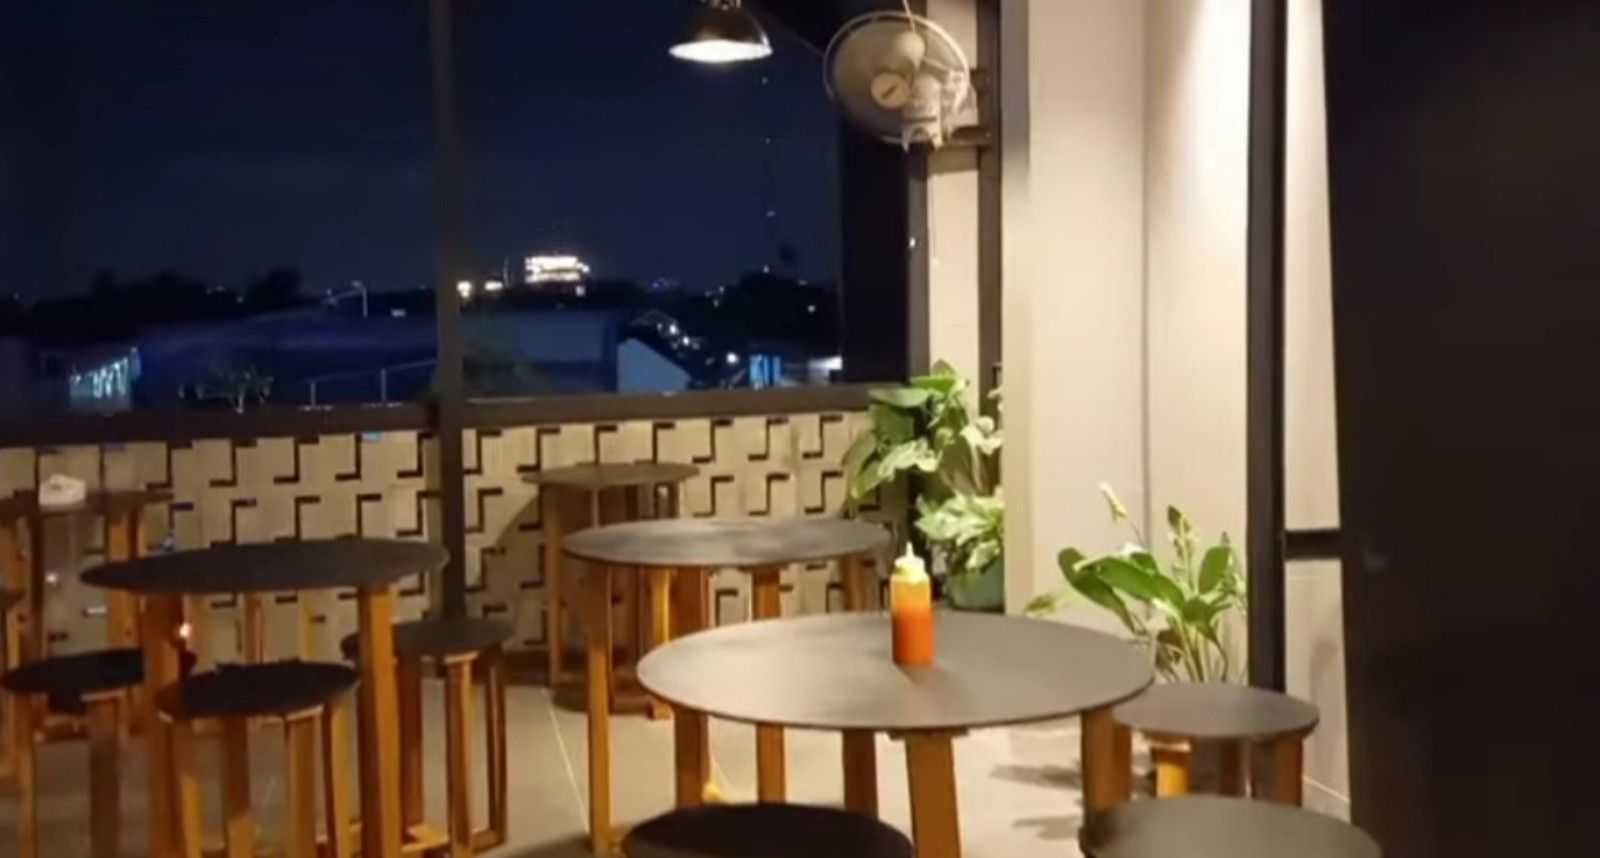 Rumah Kakek Coffee dan Resto, resto dan cafe hits terpopuler di Ciledug Kota Tangerang Banten/tangkapan layar youtube/channel Butet Vlog 